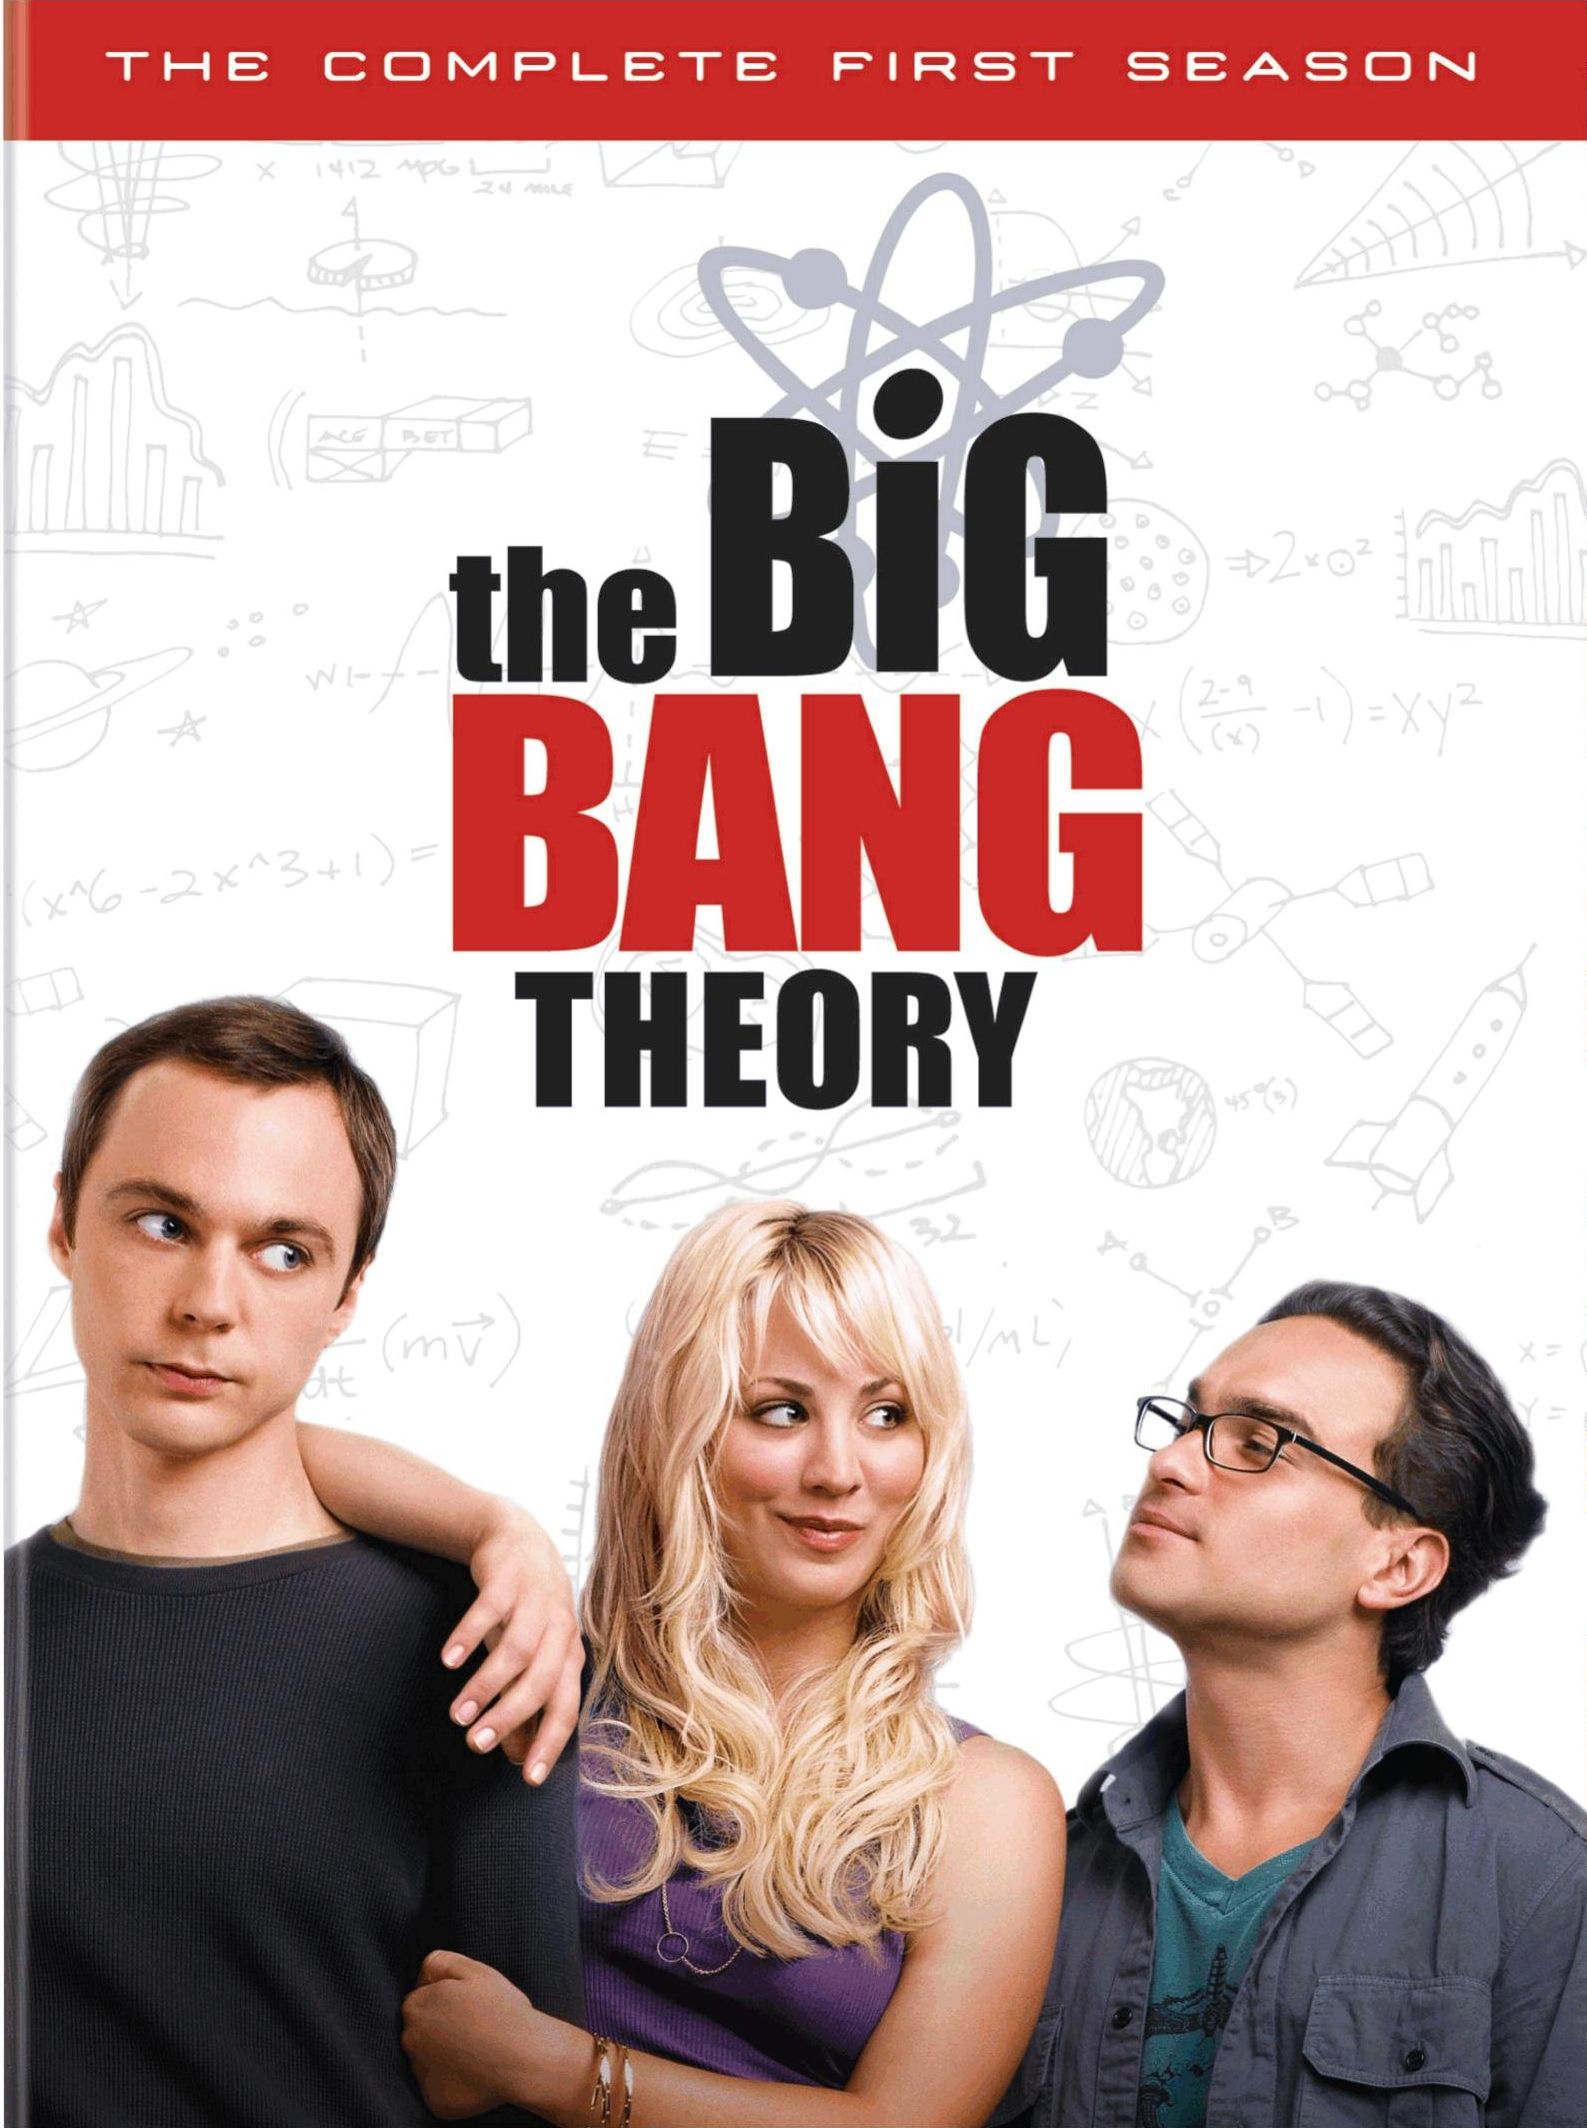 The Big Bang Theory (season 8) - Wikipedia